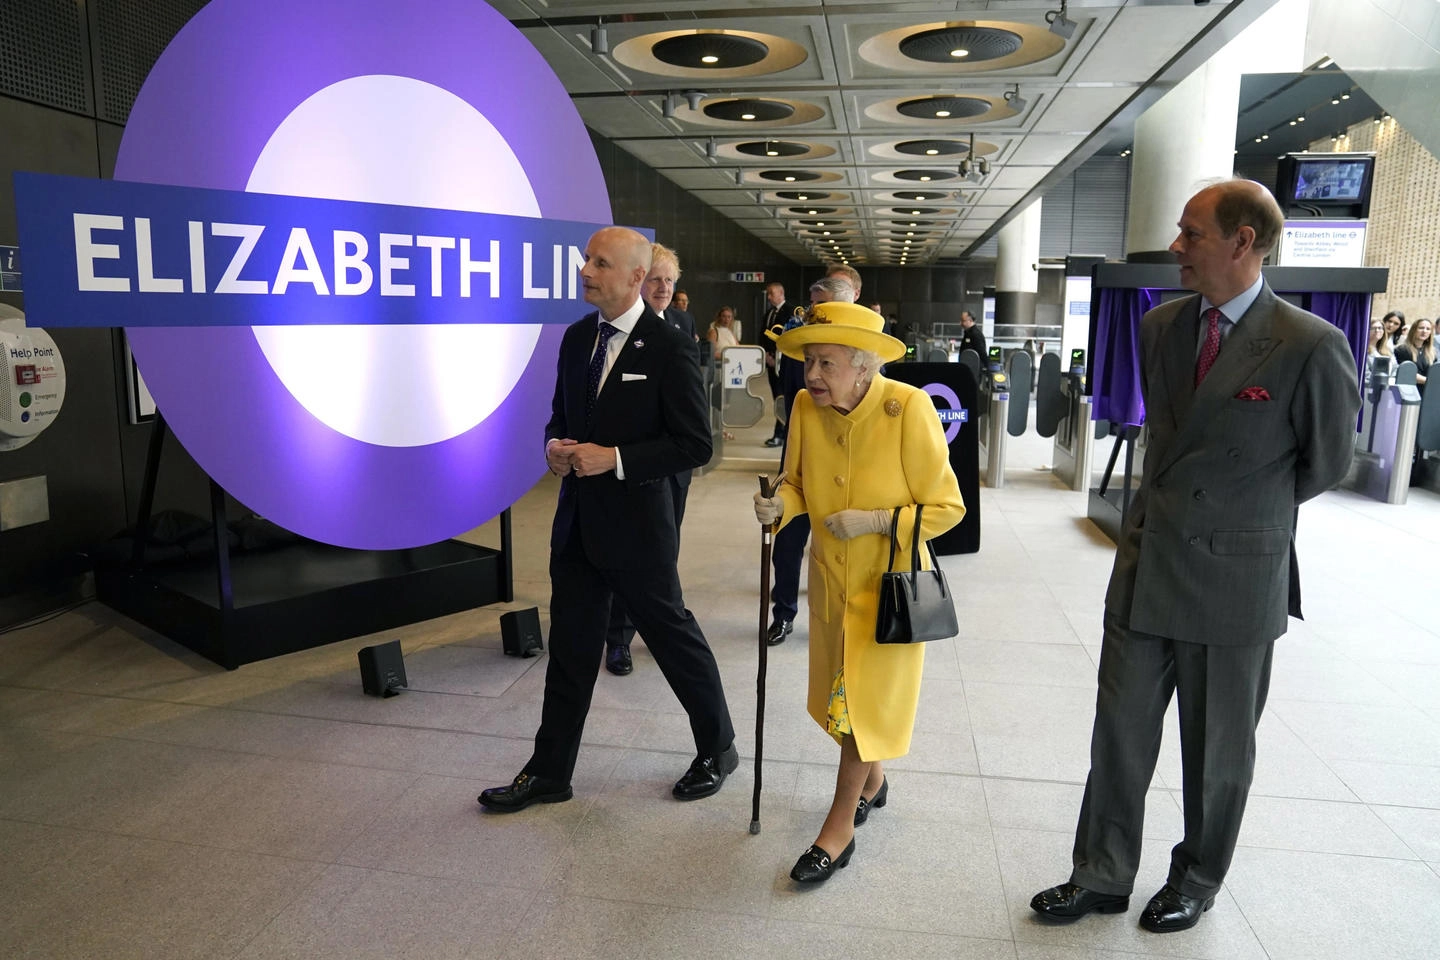 La regina Elisabetta II all'inaugurazione della metropolitana battezzata con il suo nome